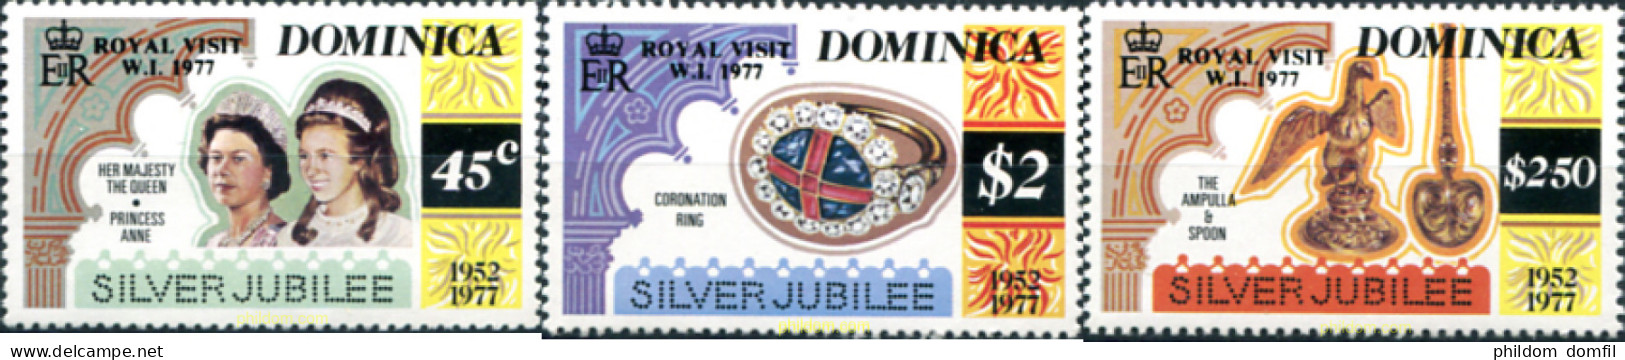 306292 MNH DOMINICA 1977 VISITA REAL - Dominica (...-1978)